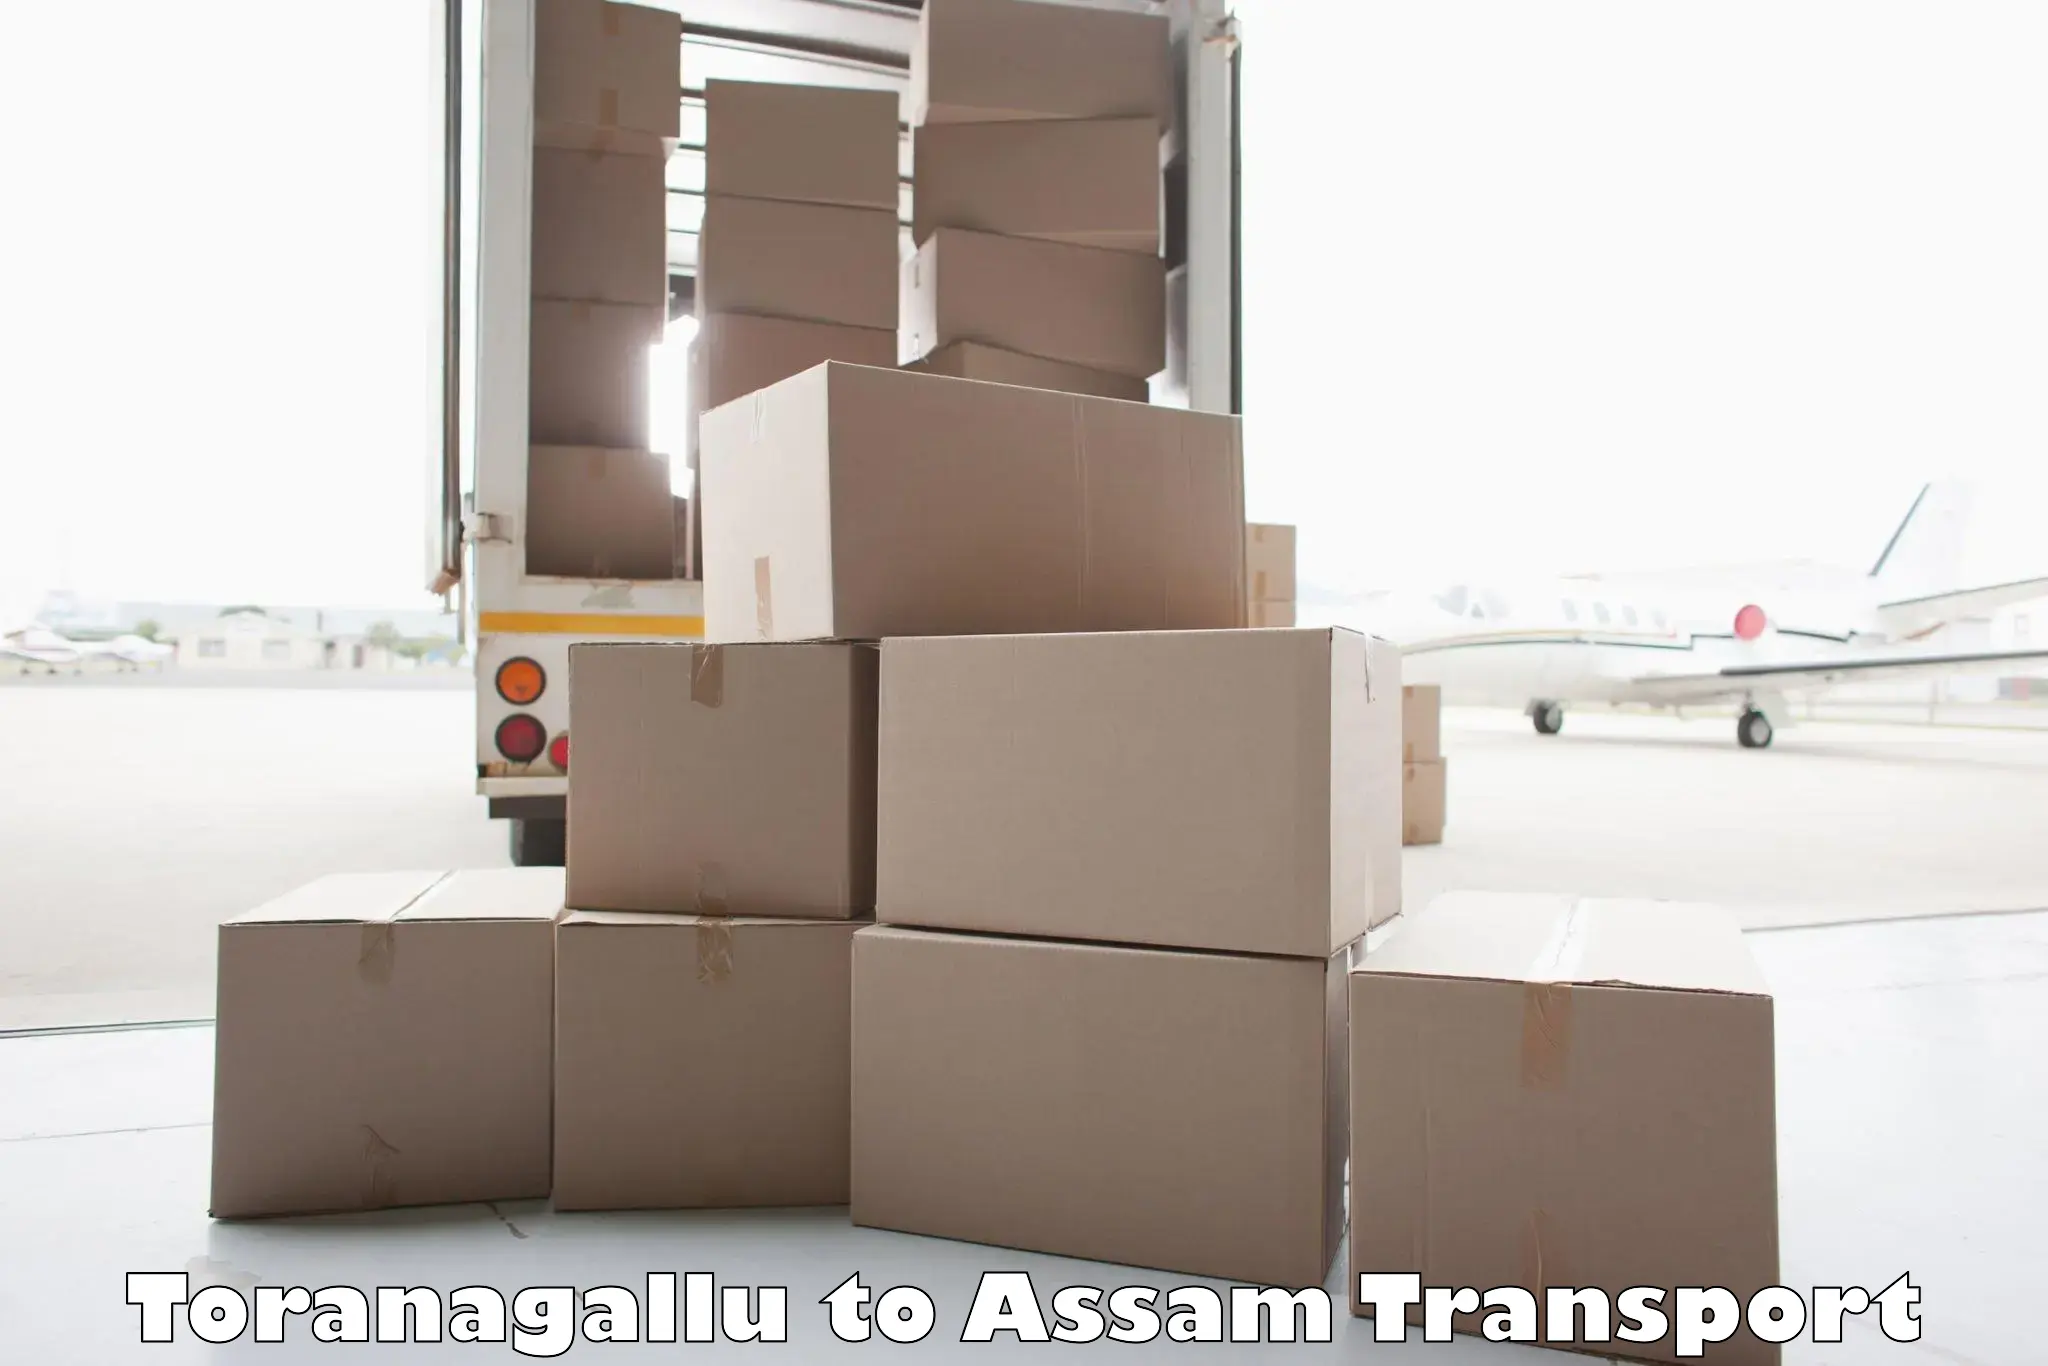 Lorry transport service Toranagallu to Mariani